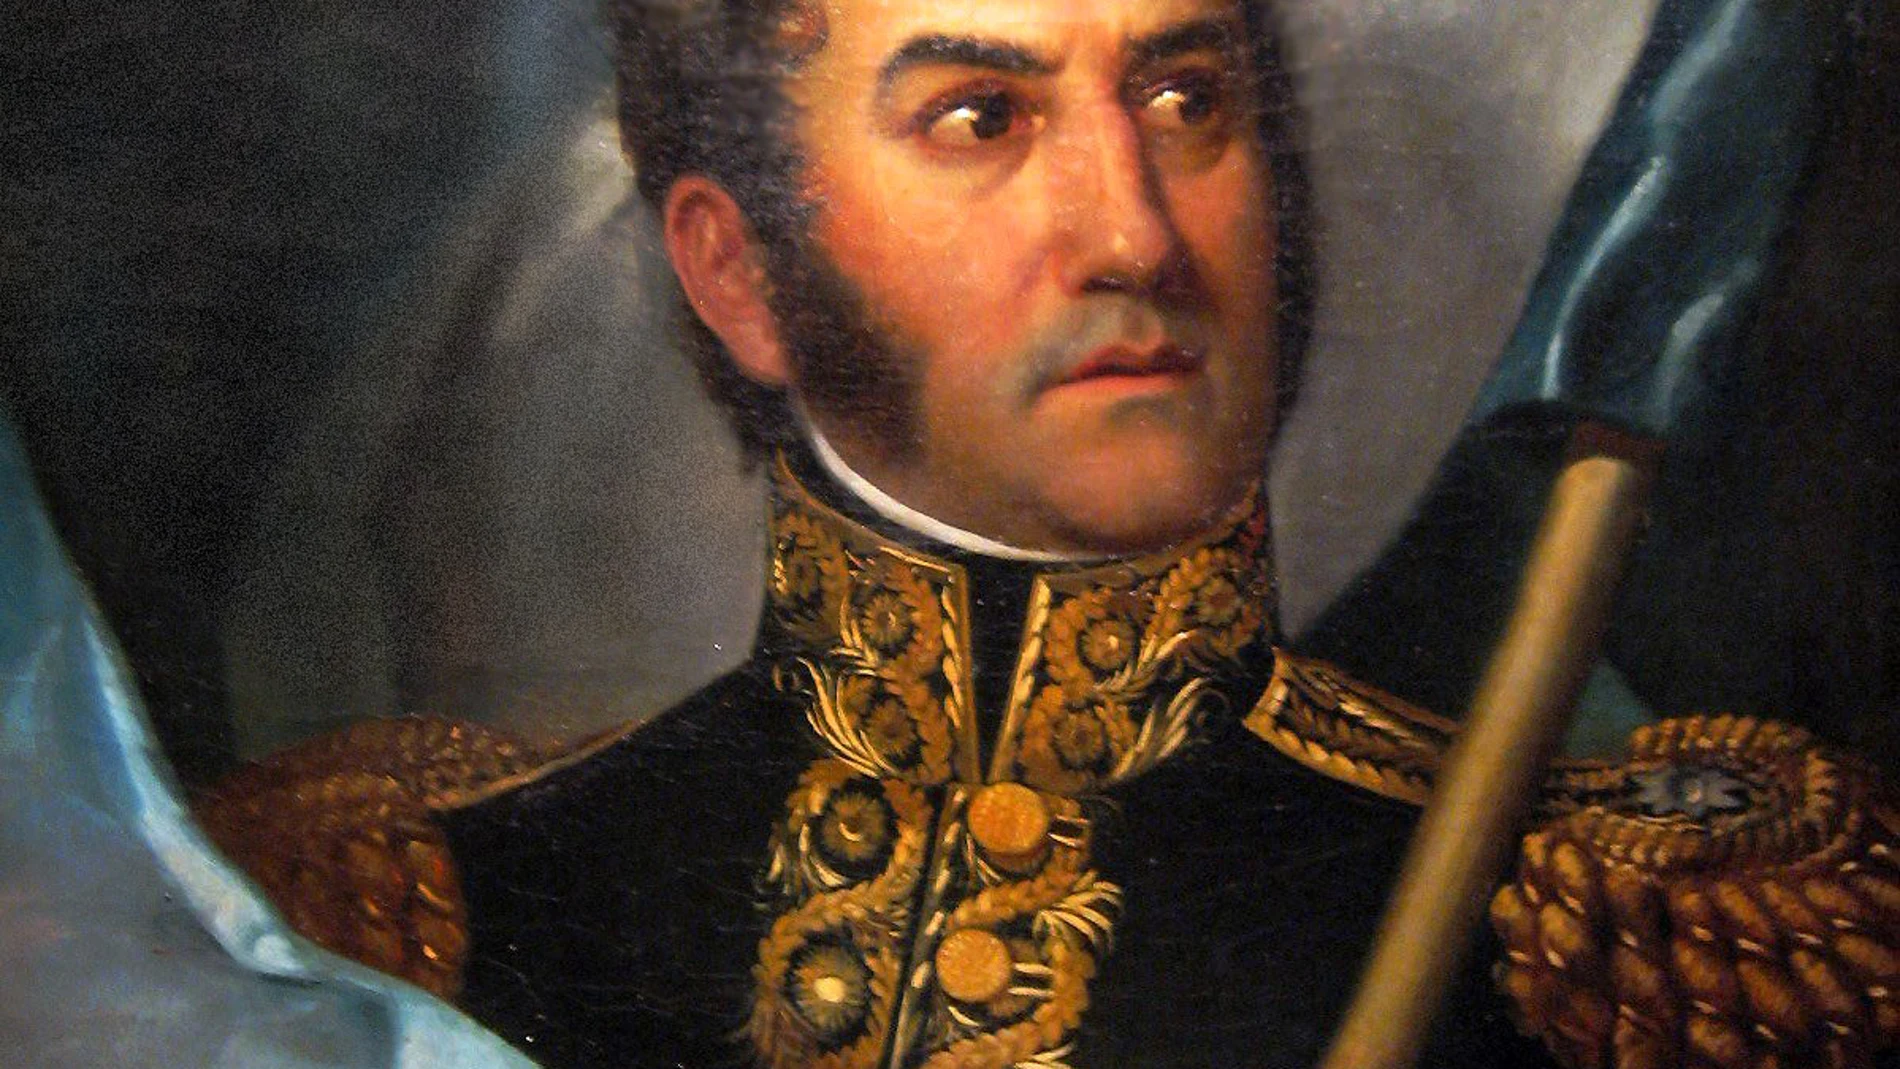 De padres españoles, José de San Martín ingresó en el Ejército a los doce años